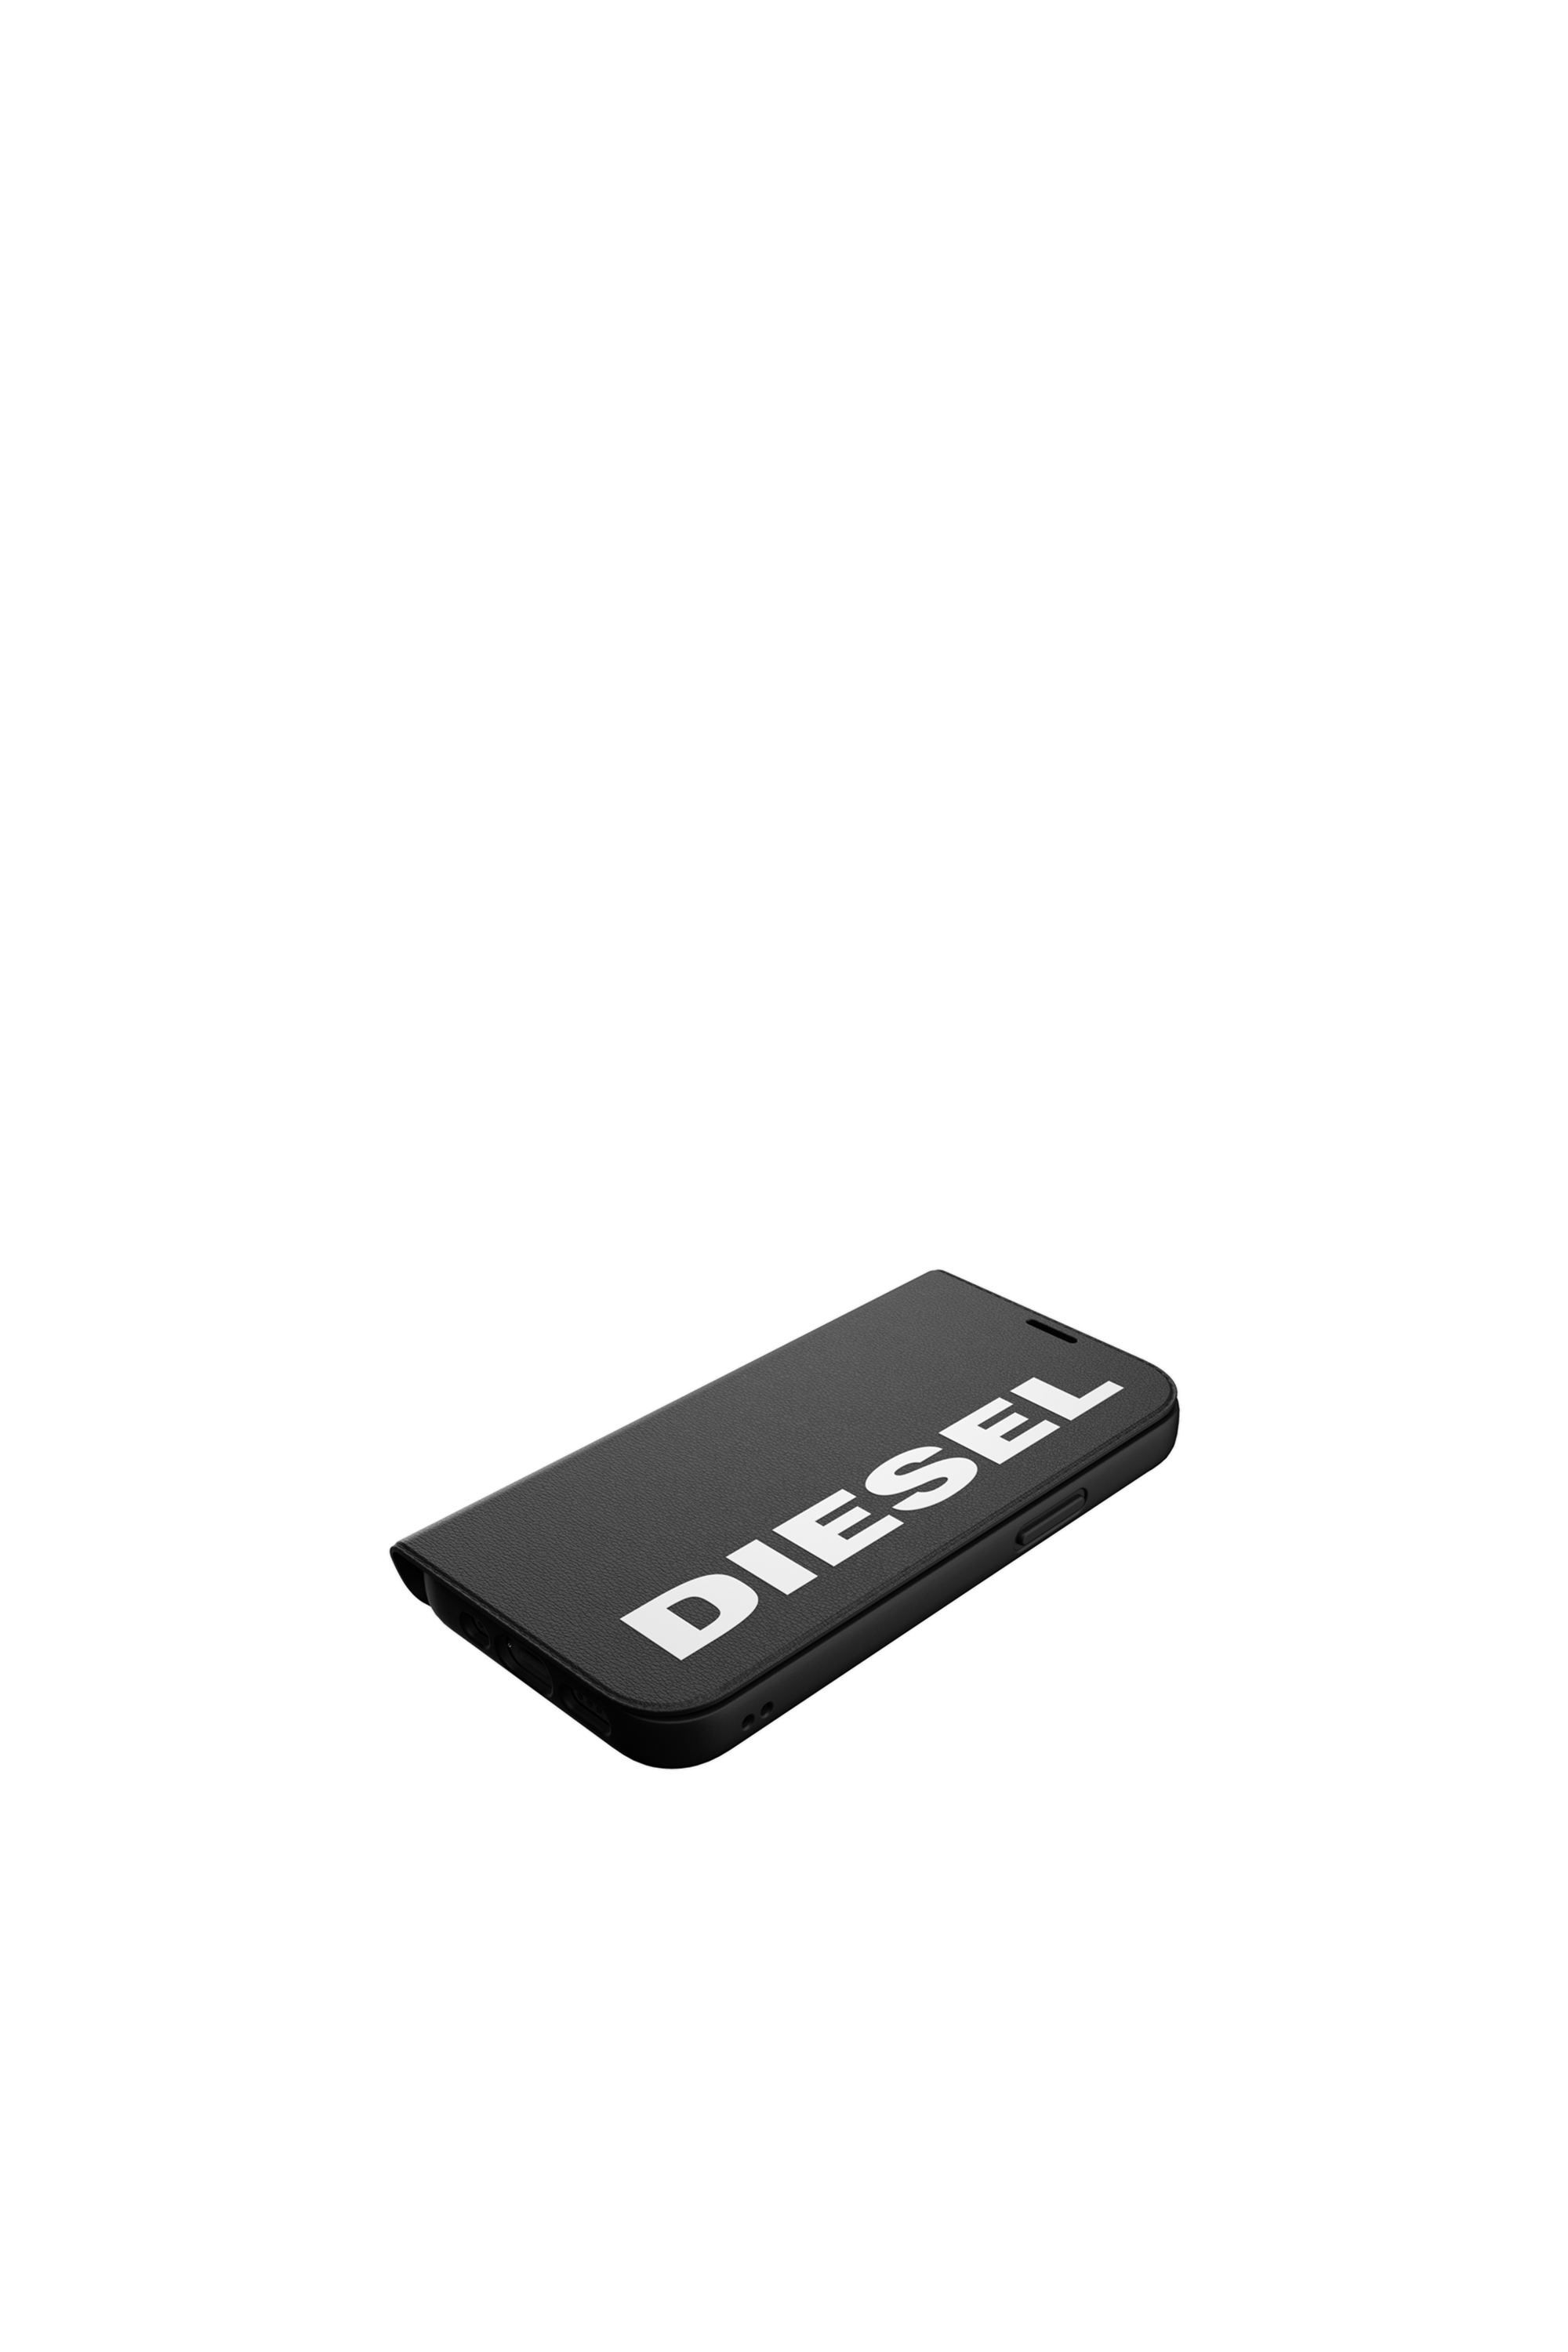 Diesel - 42485, Black - Image 4